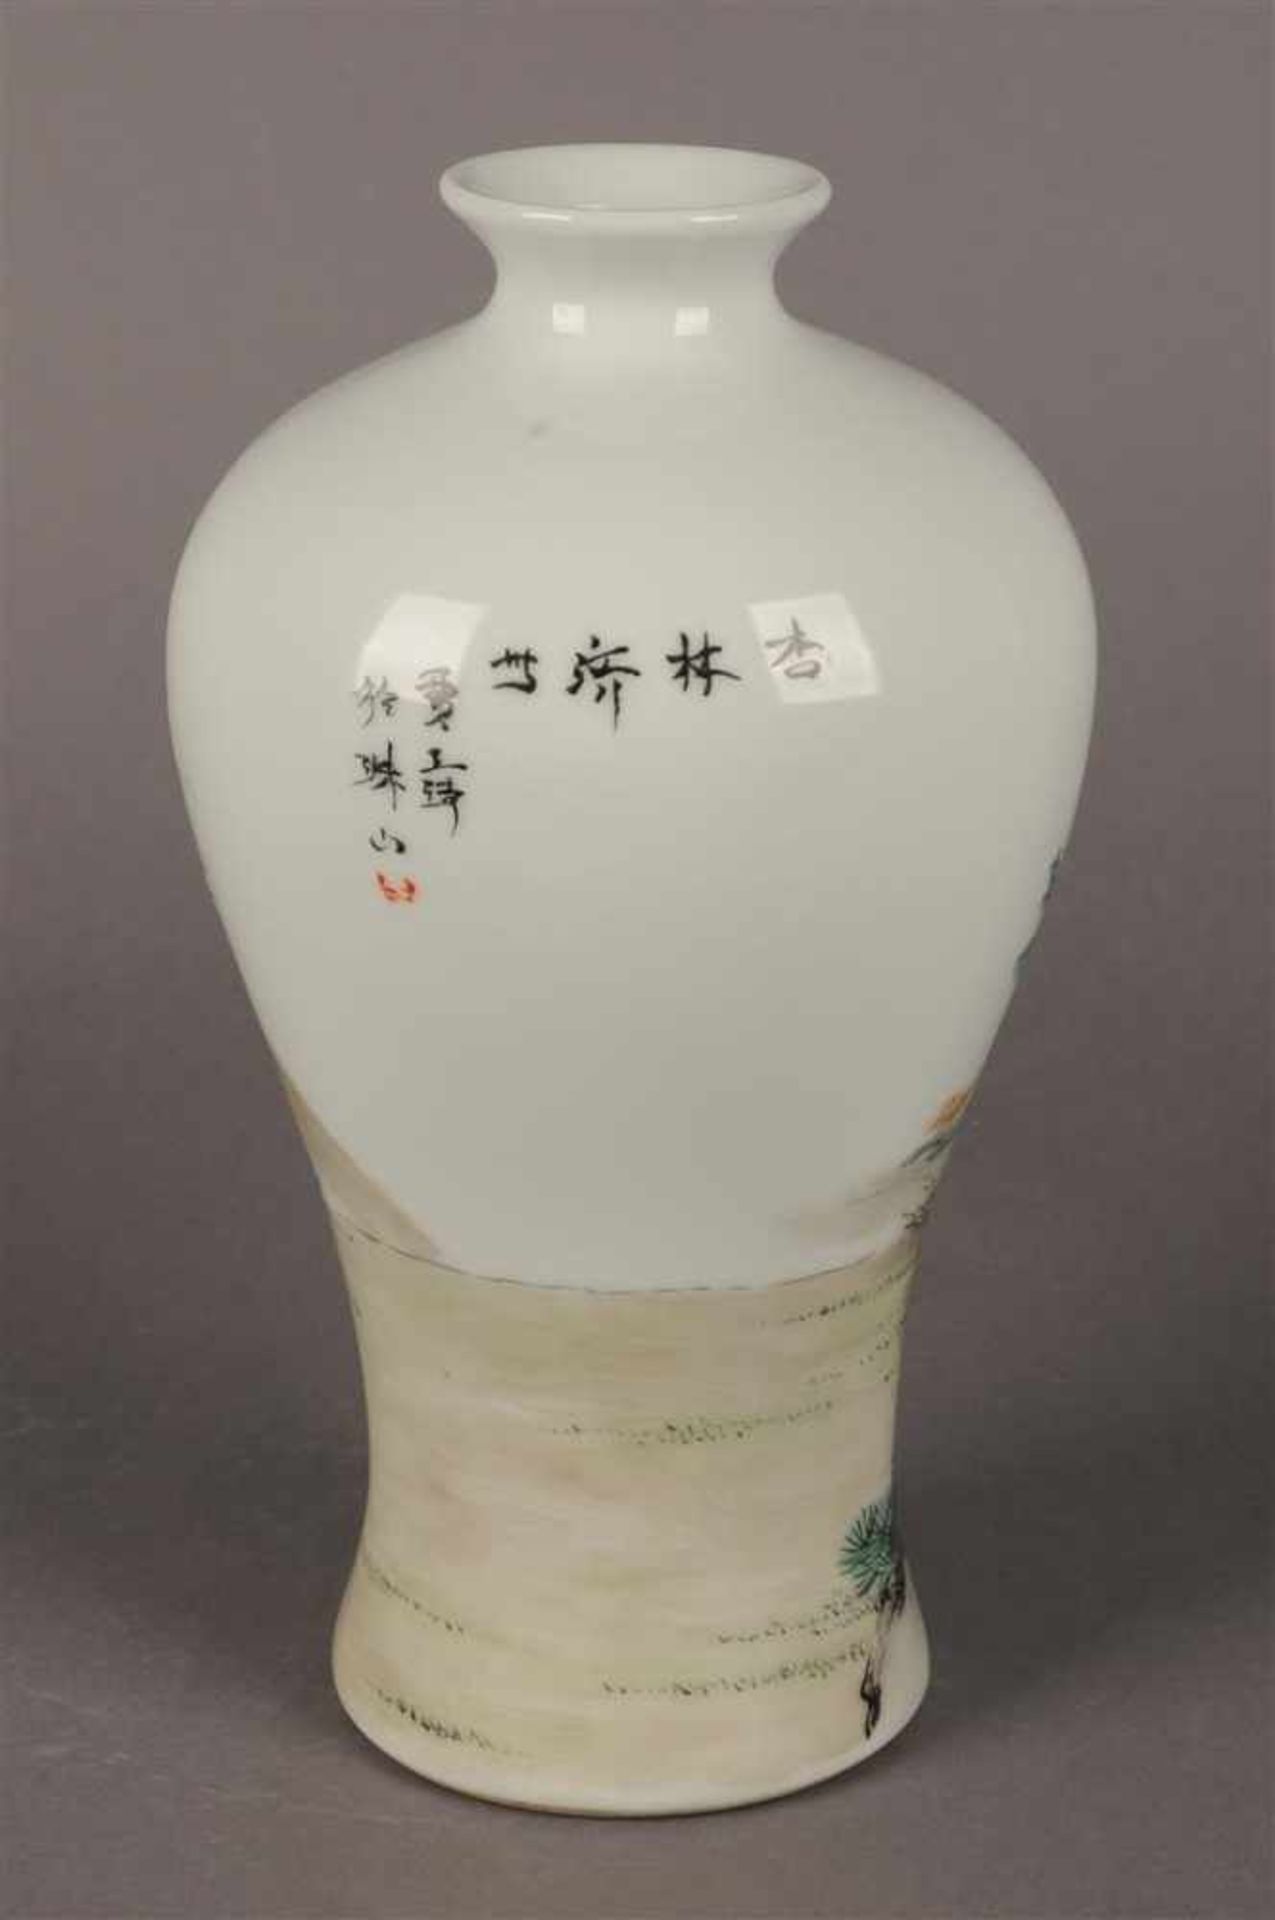 Polychroom porseleinen Meiping vaas met figuraal landschaps decor en tekst, gemerkt met zegelmerk, - Bild 2 aus 6